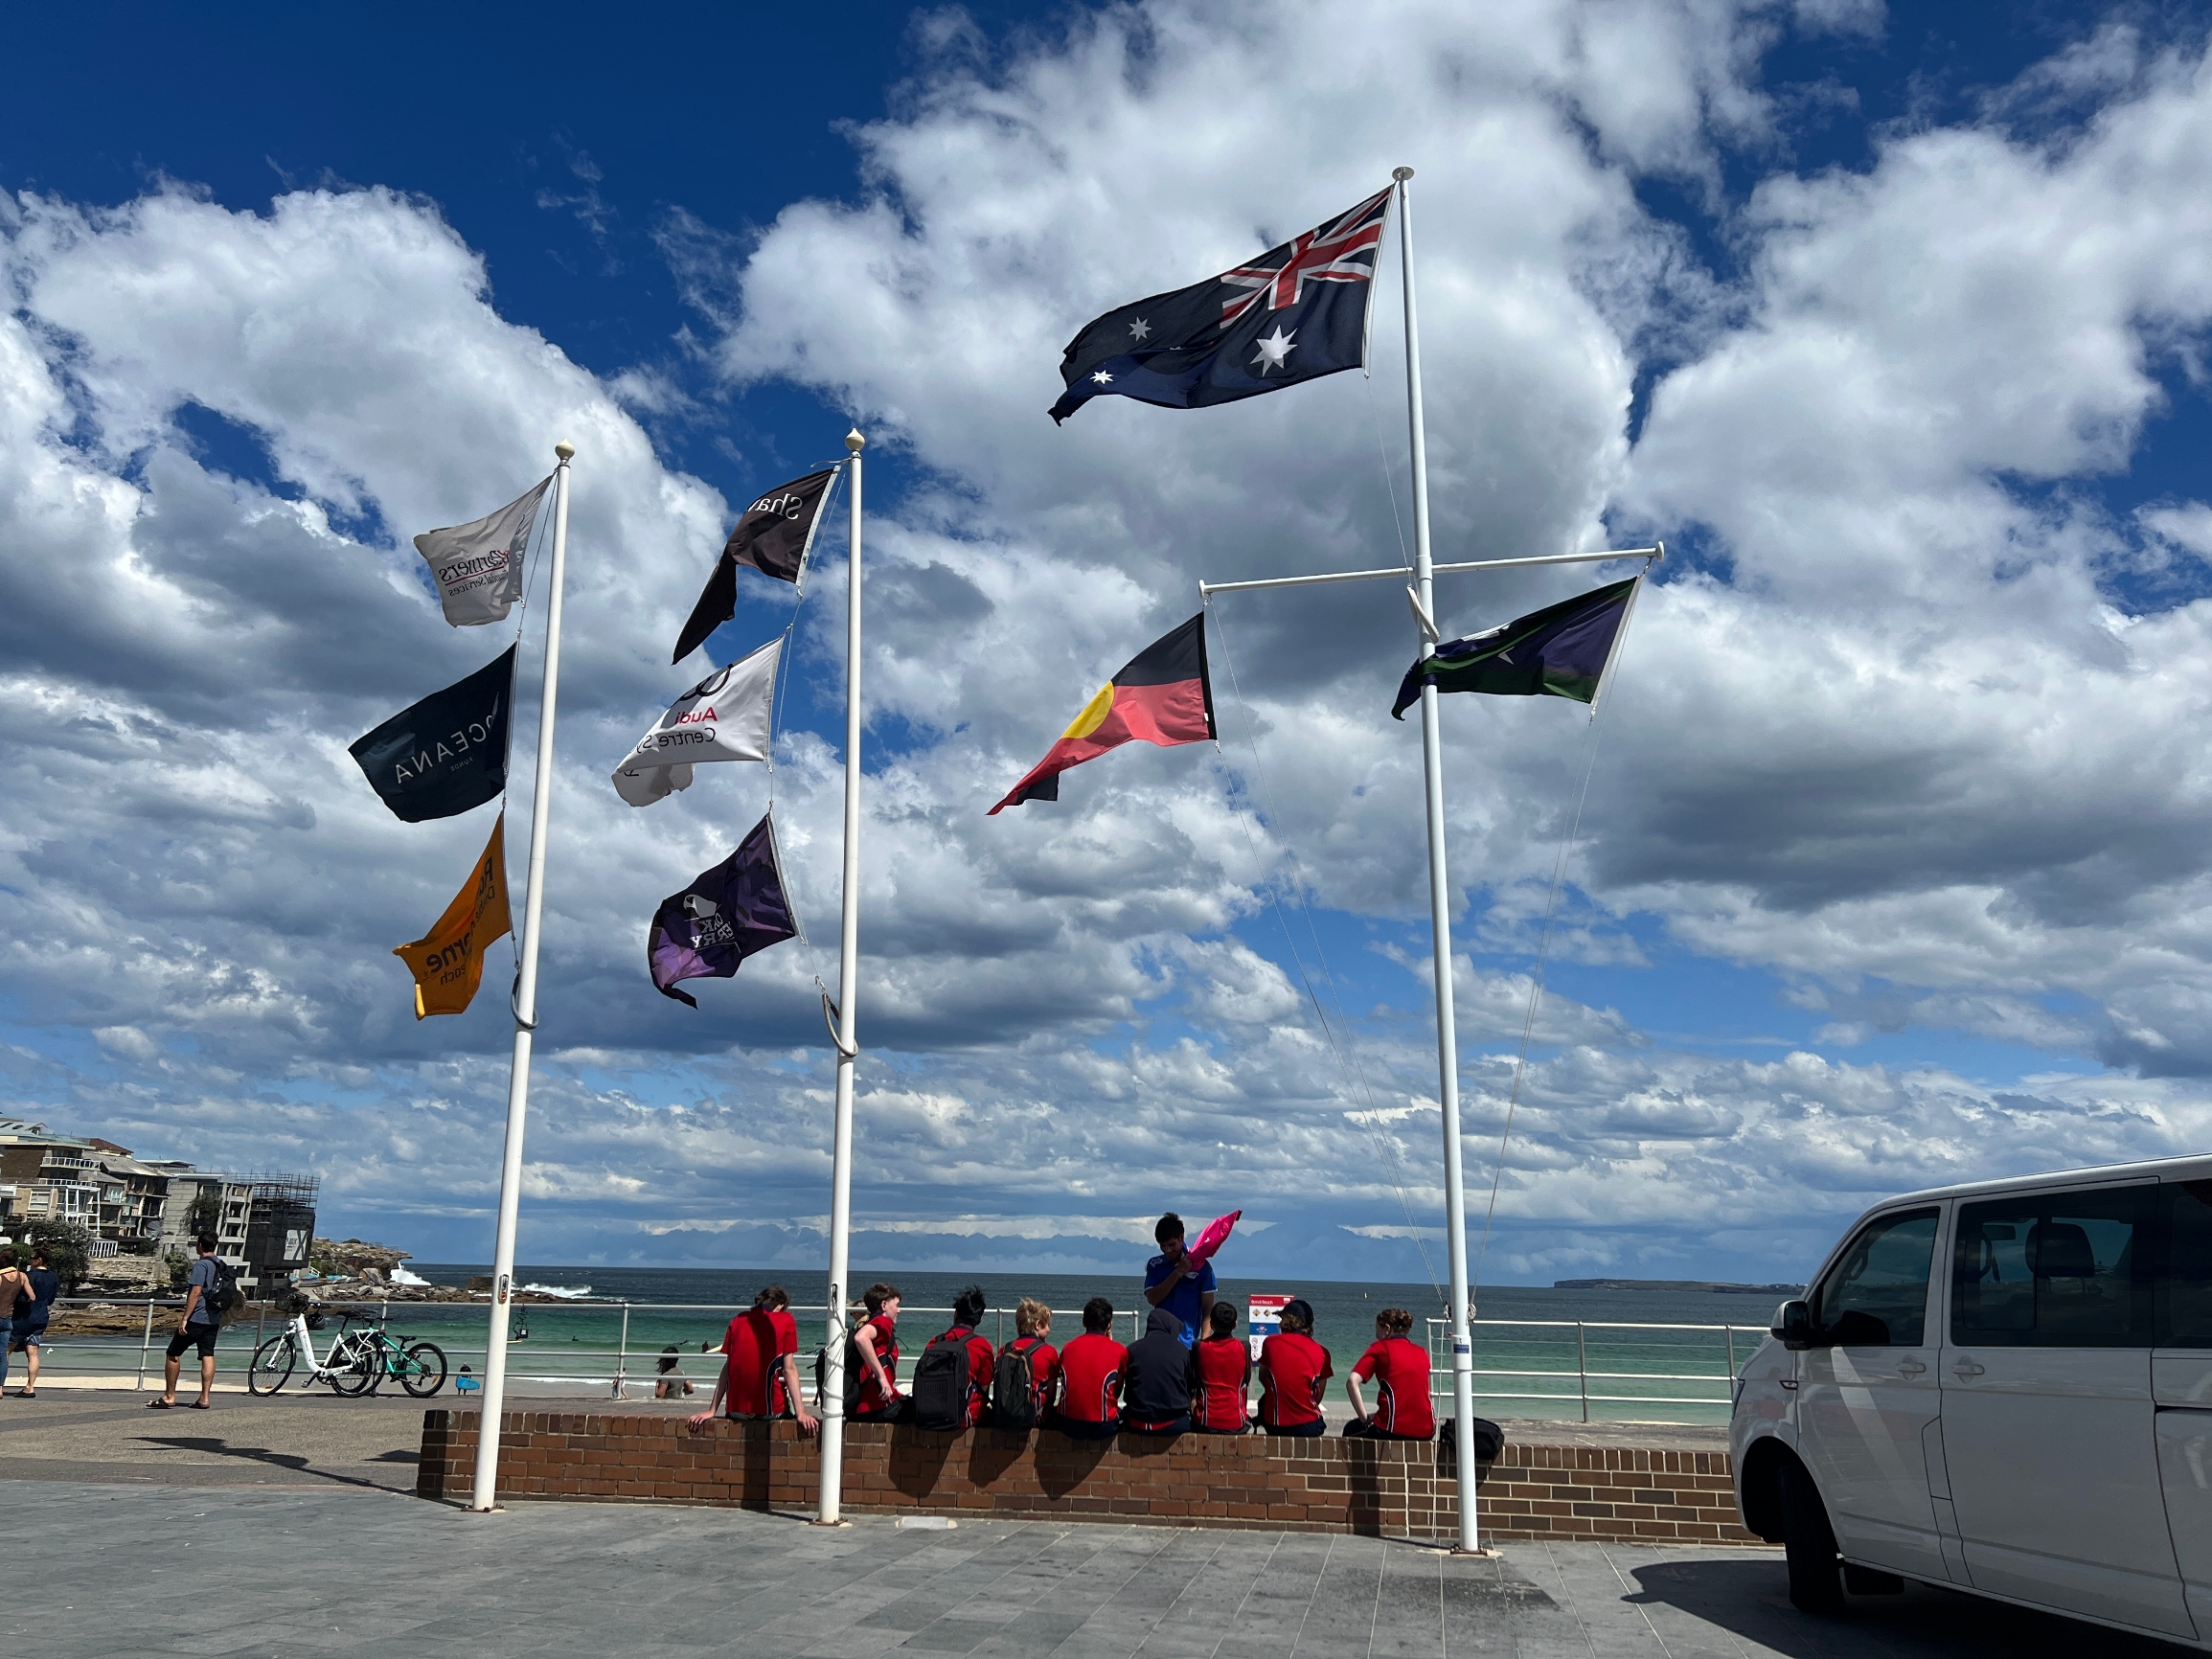 我终于来到了澳大利亚的悉尼，迫不及待地奔向了著名的邦迪海滩。当我第一次踏上那片沙滩时，心情无比激动。